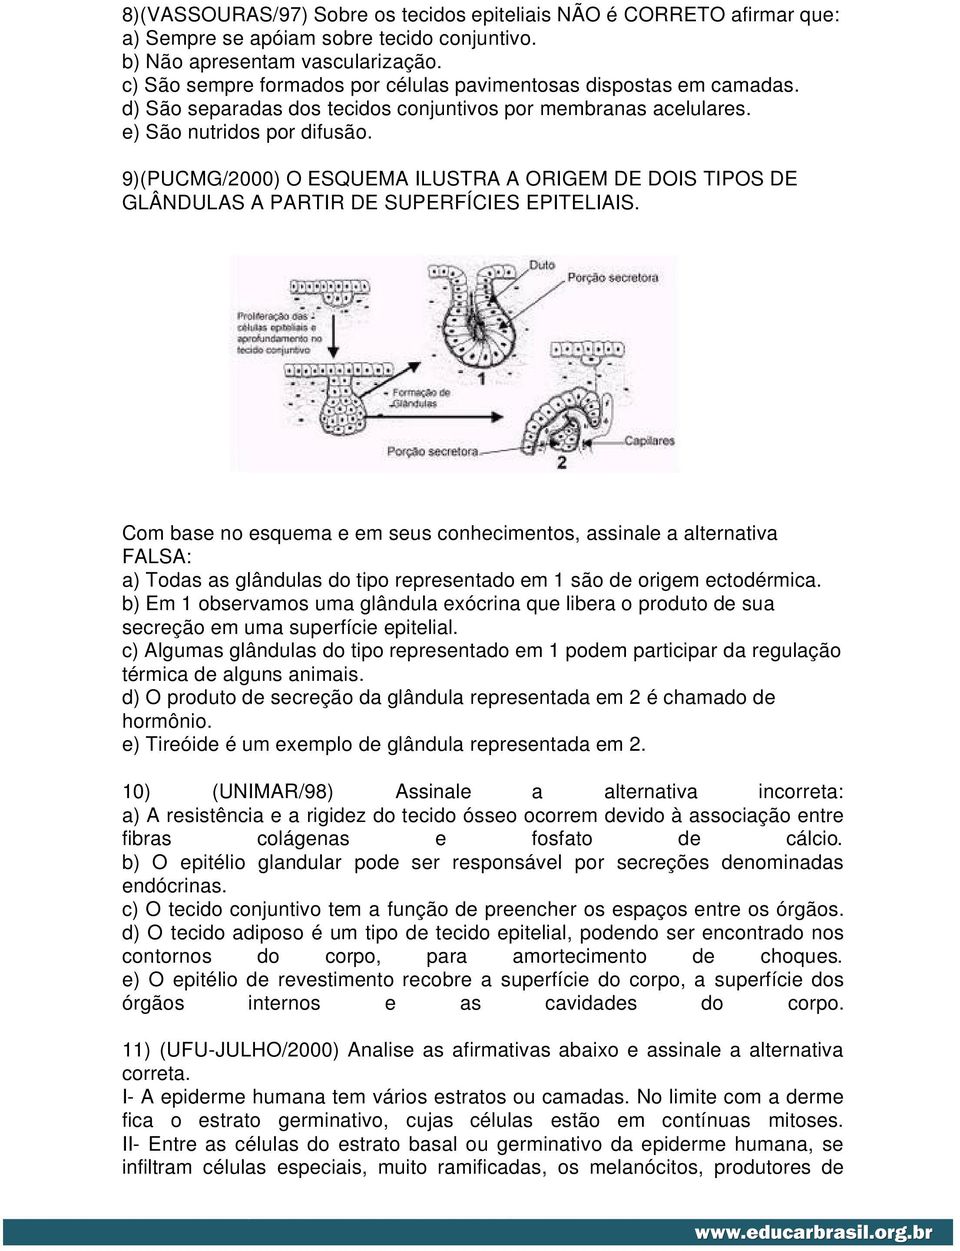 9)(PUCMG/2000) O ESQUEMA ILUSTRA A ORIGEM DE DOIS TIPOS DE GLÂNDULAS A PARTIR DE SUPERFÍCIES EPITELIAIS.